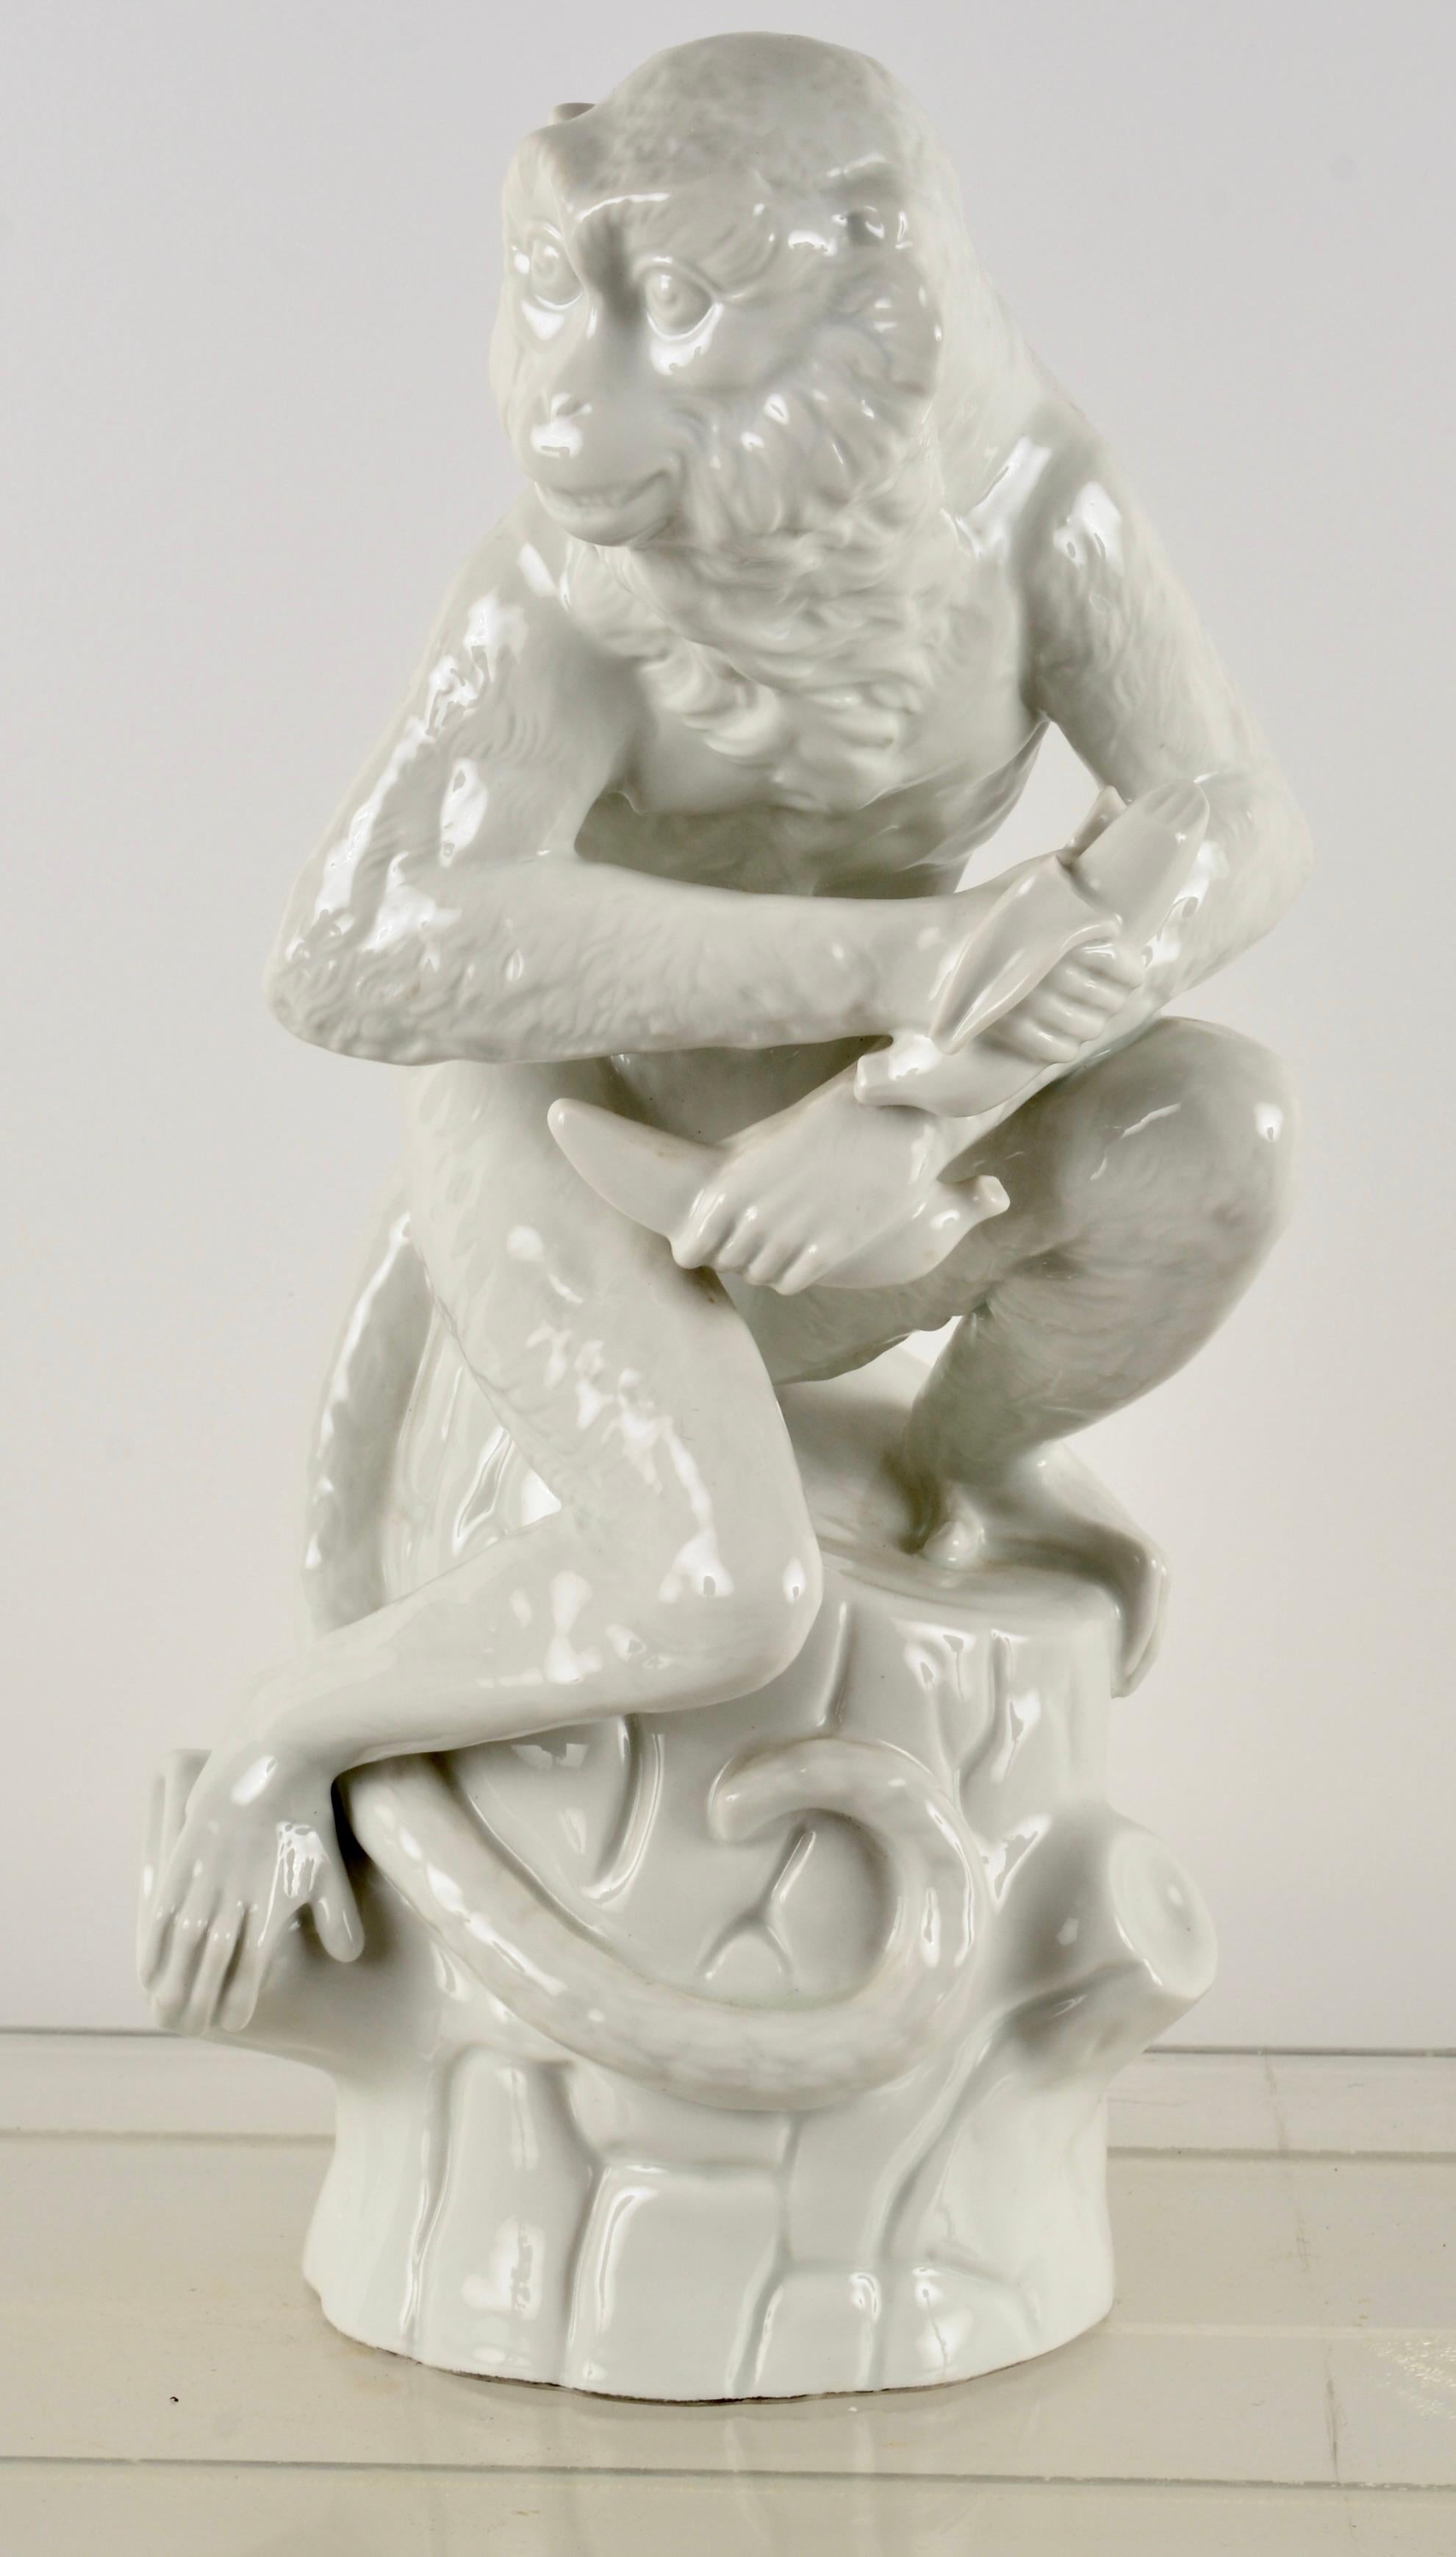 Fabriquée par la KPM, Real Porcelain Factory, à Berlin, en Allemagne, cette figurine magnifiquement travaillée représente un singe mangeant des bananes. L'attention portée aux détails et la finesse de la glaçure sont remarquables. Très bon état,